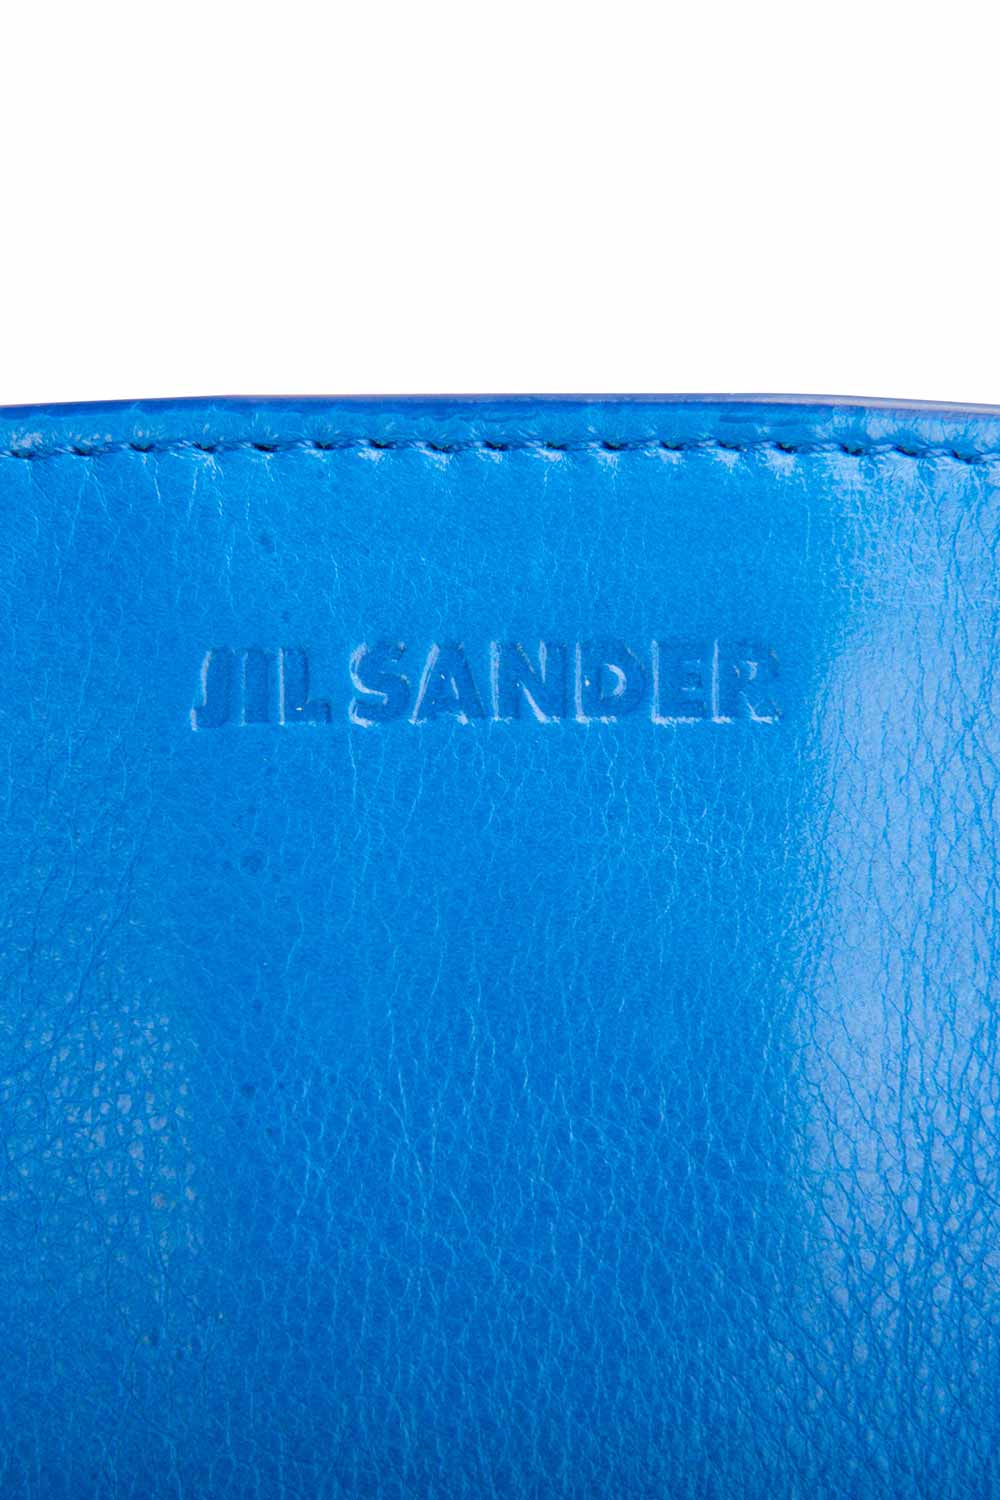 Jil Sander Blue/White Leather Triple Color Block Clutch